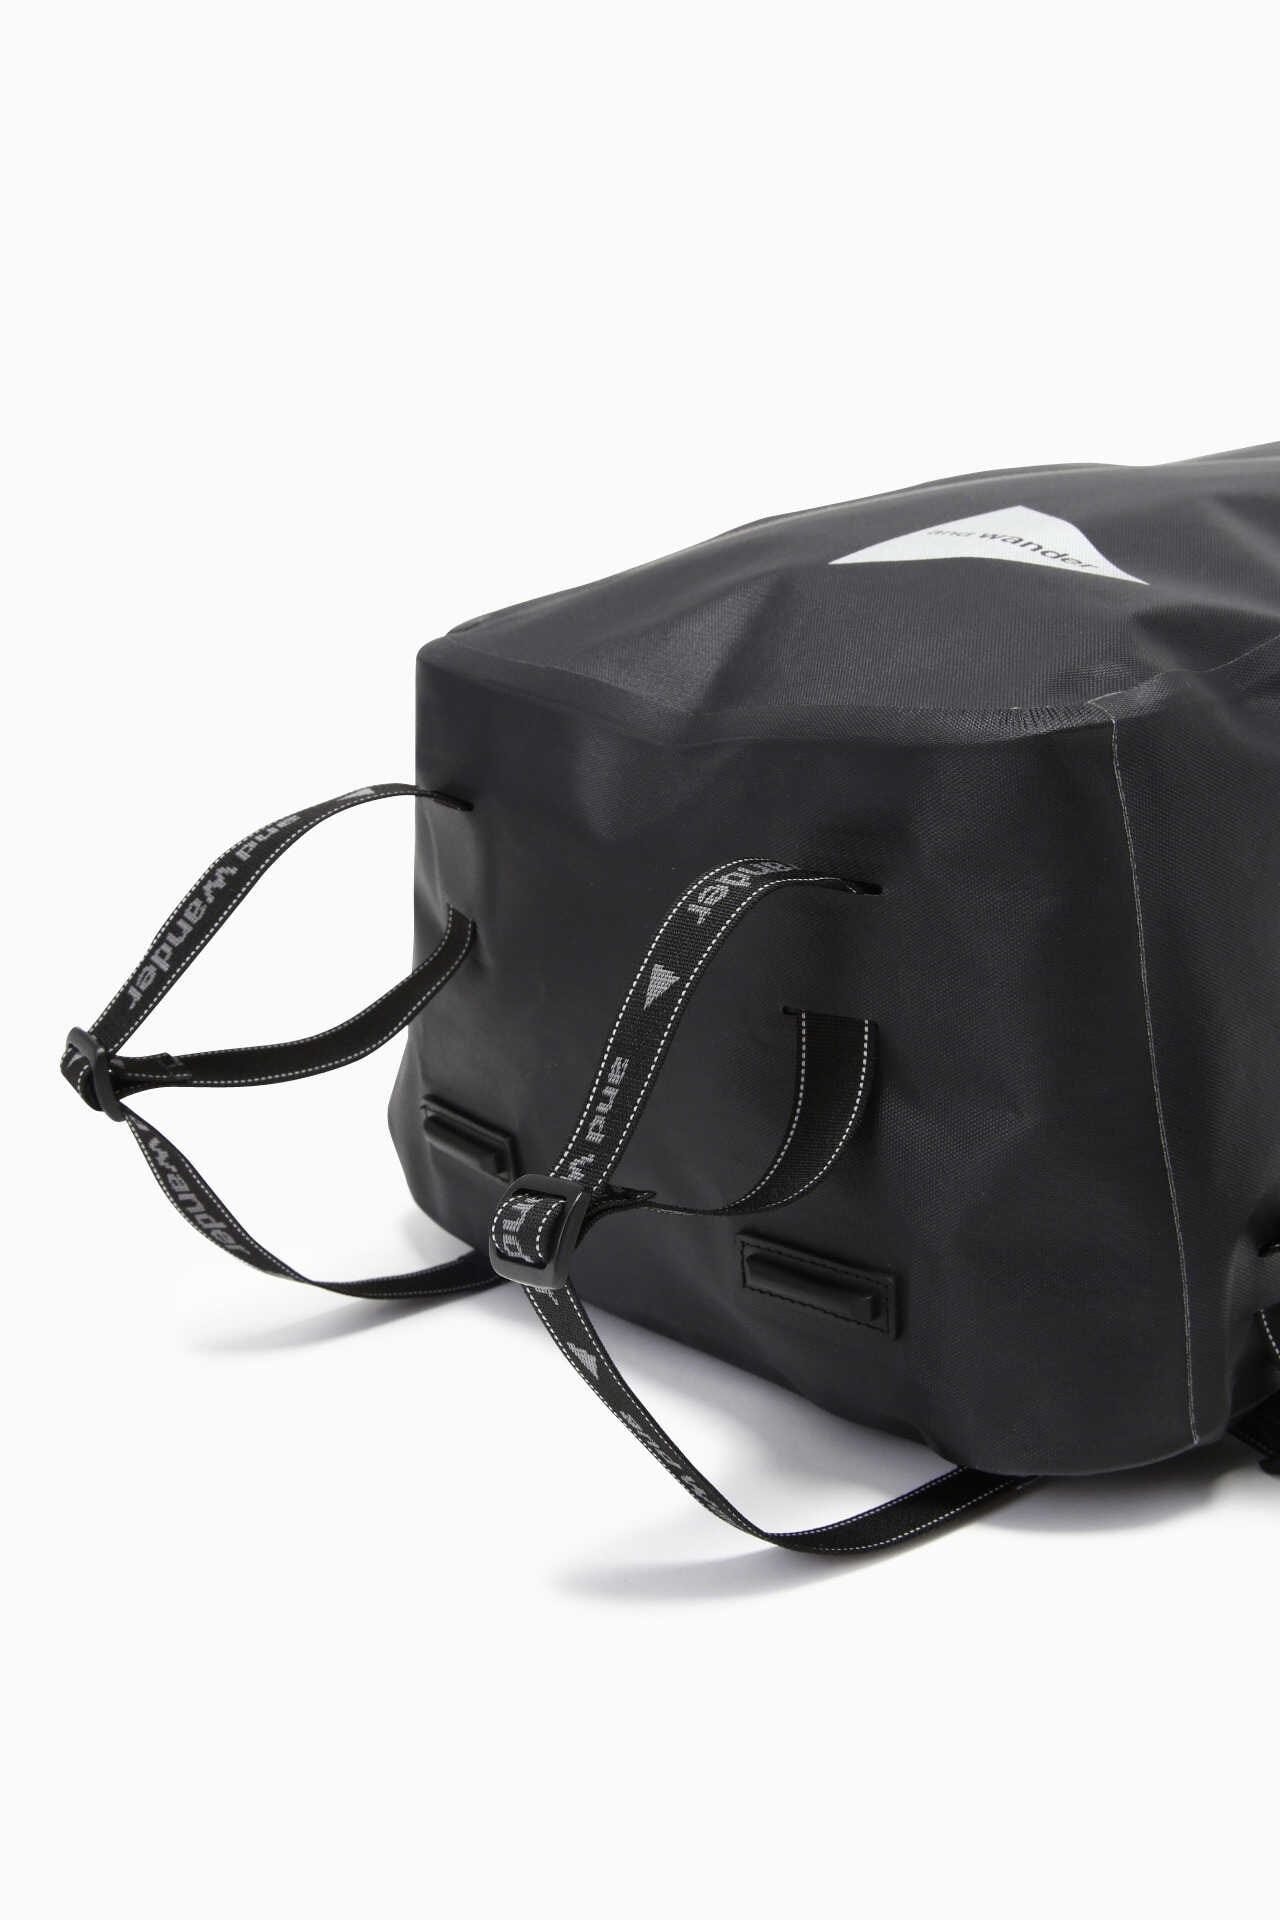 waterproof daypack | backpack | and wander ONLINE STORE